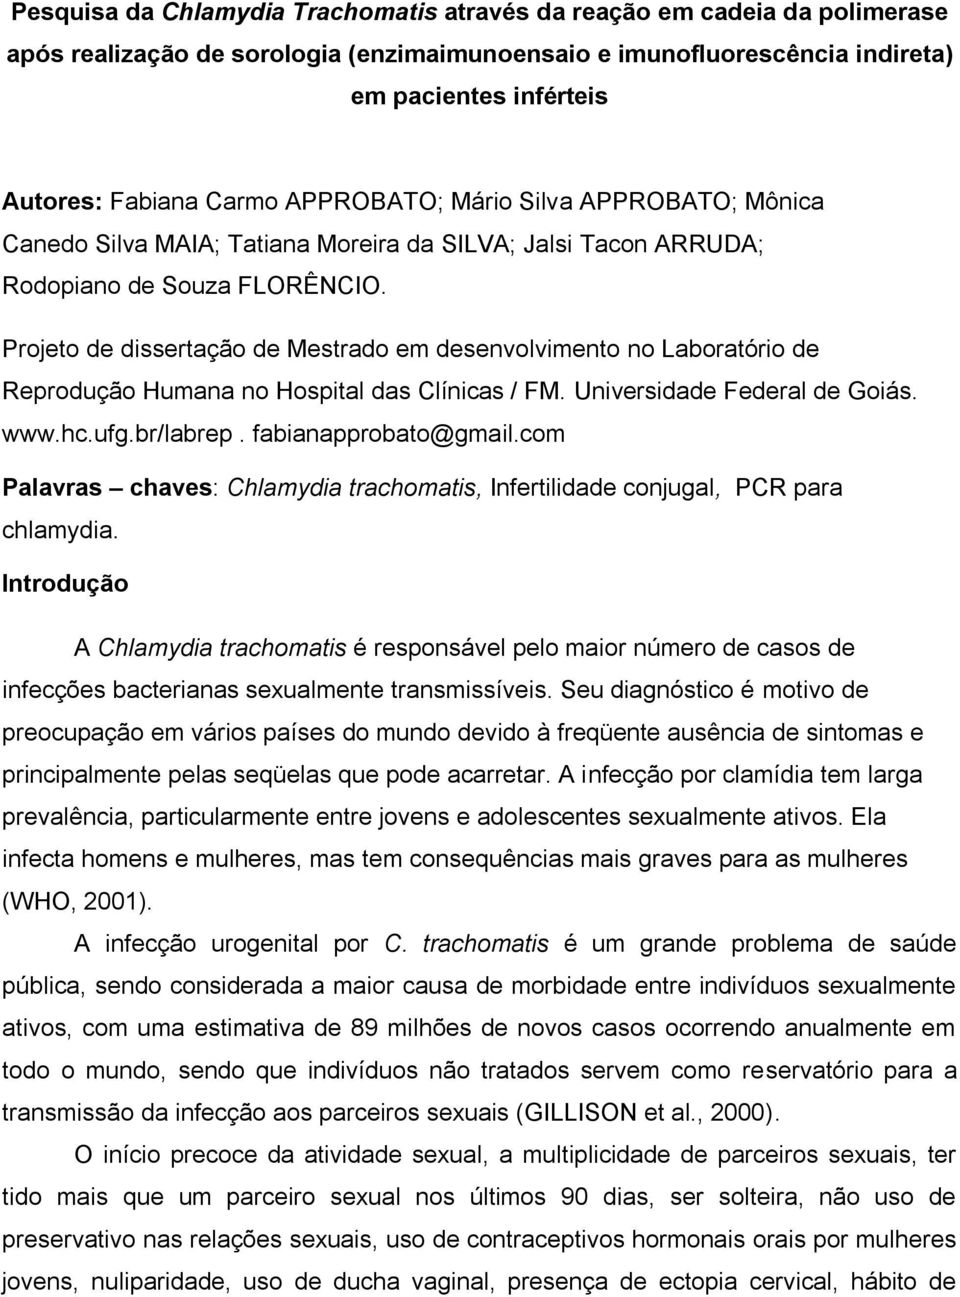 Projeto de dissertação de Mestrado em desenvolvimento no Laboratório de Reprodução Humana no Hospital das Clínicas / FM. Universidade Federal de Goiás. www.hc.ufg.br/labrep. fabianapprobato@gmail.